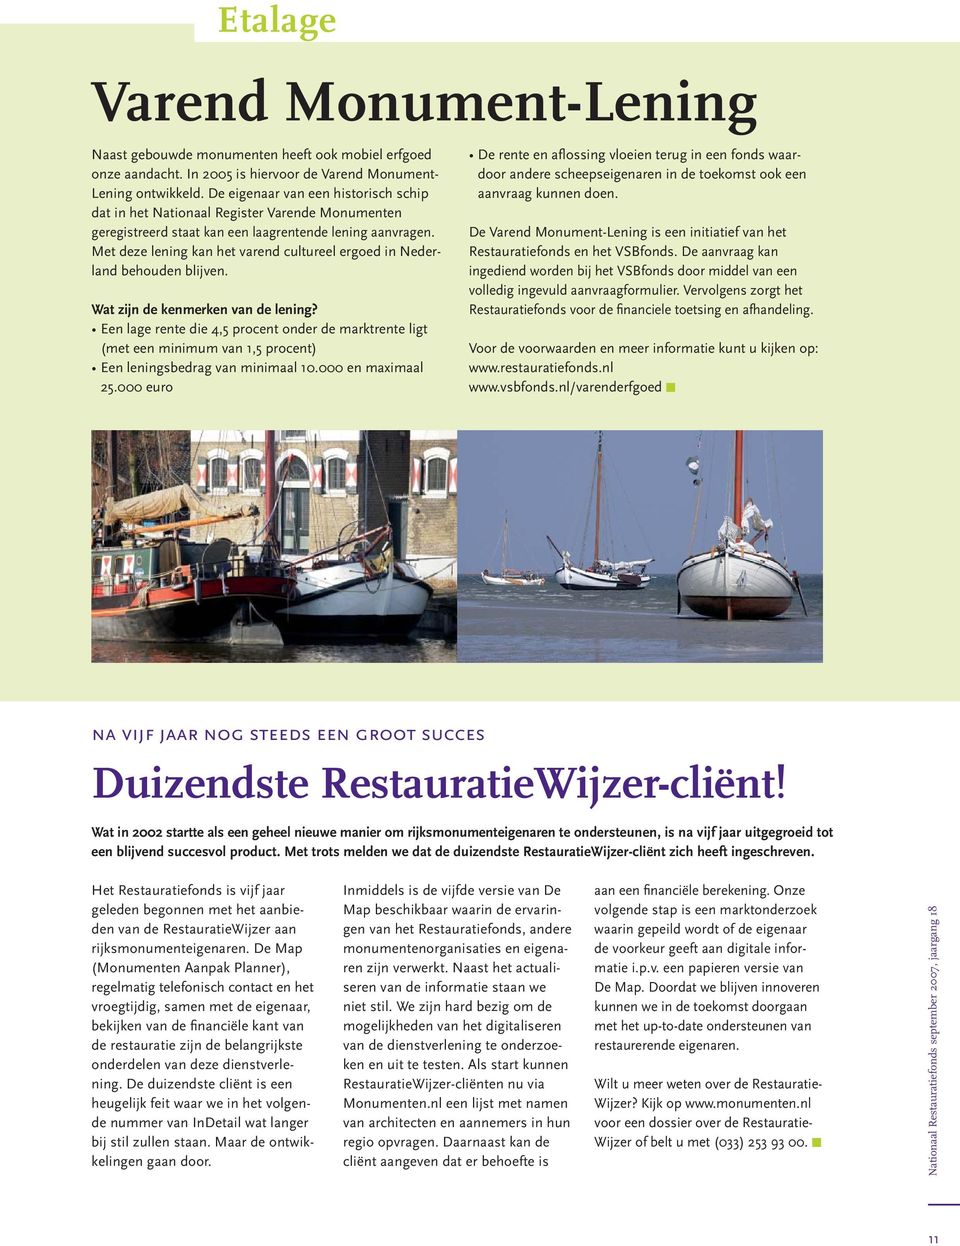 Met deze lening kan het varend cultureel ergoed in Nederland behouden blijven. Wat zijn de kenmerken van de lening?